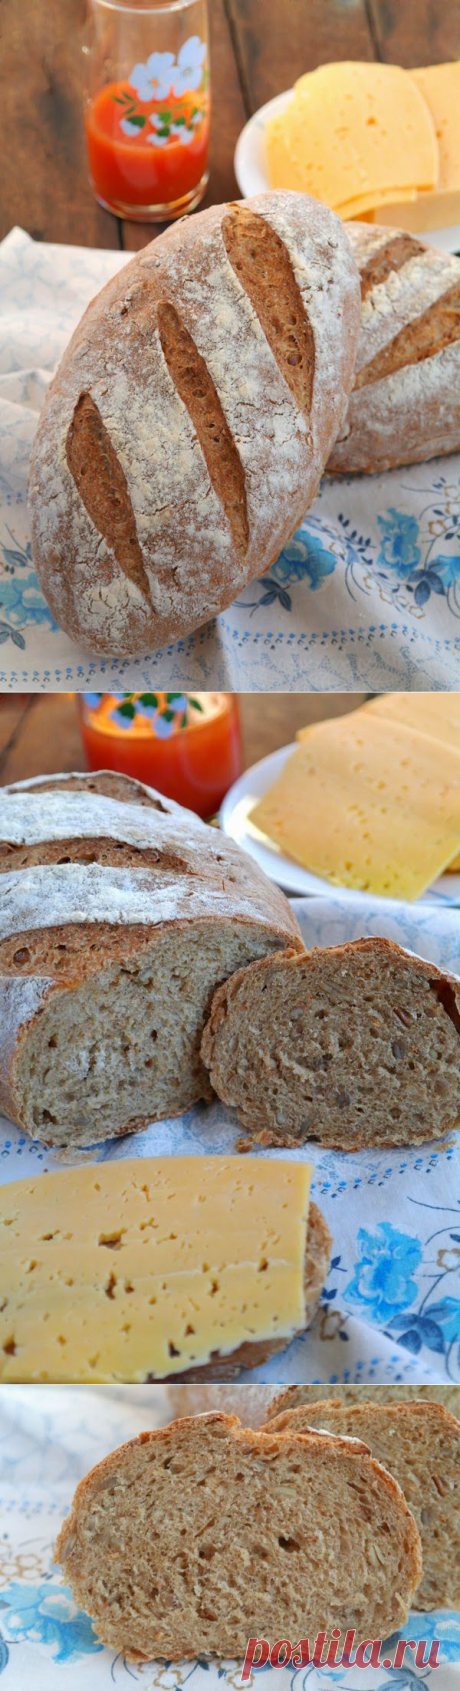 Просто и вкусно: Хлеб с семенами подсолнечника с добавлением ржаной цельнозерновой муки